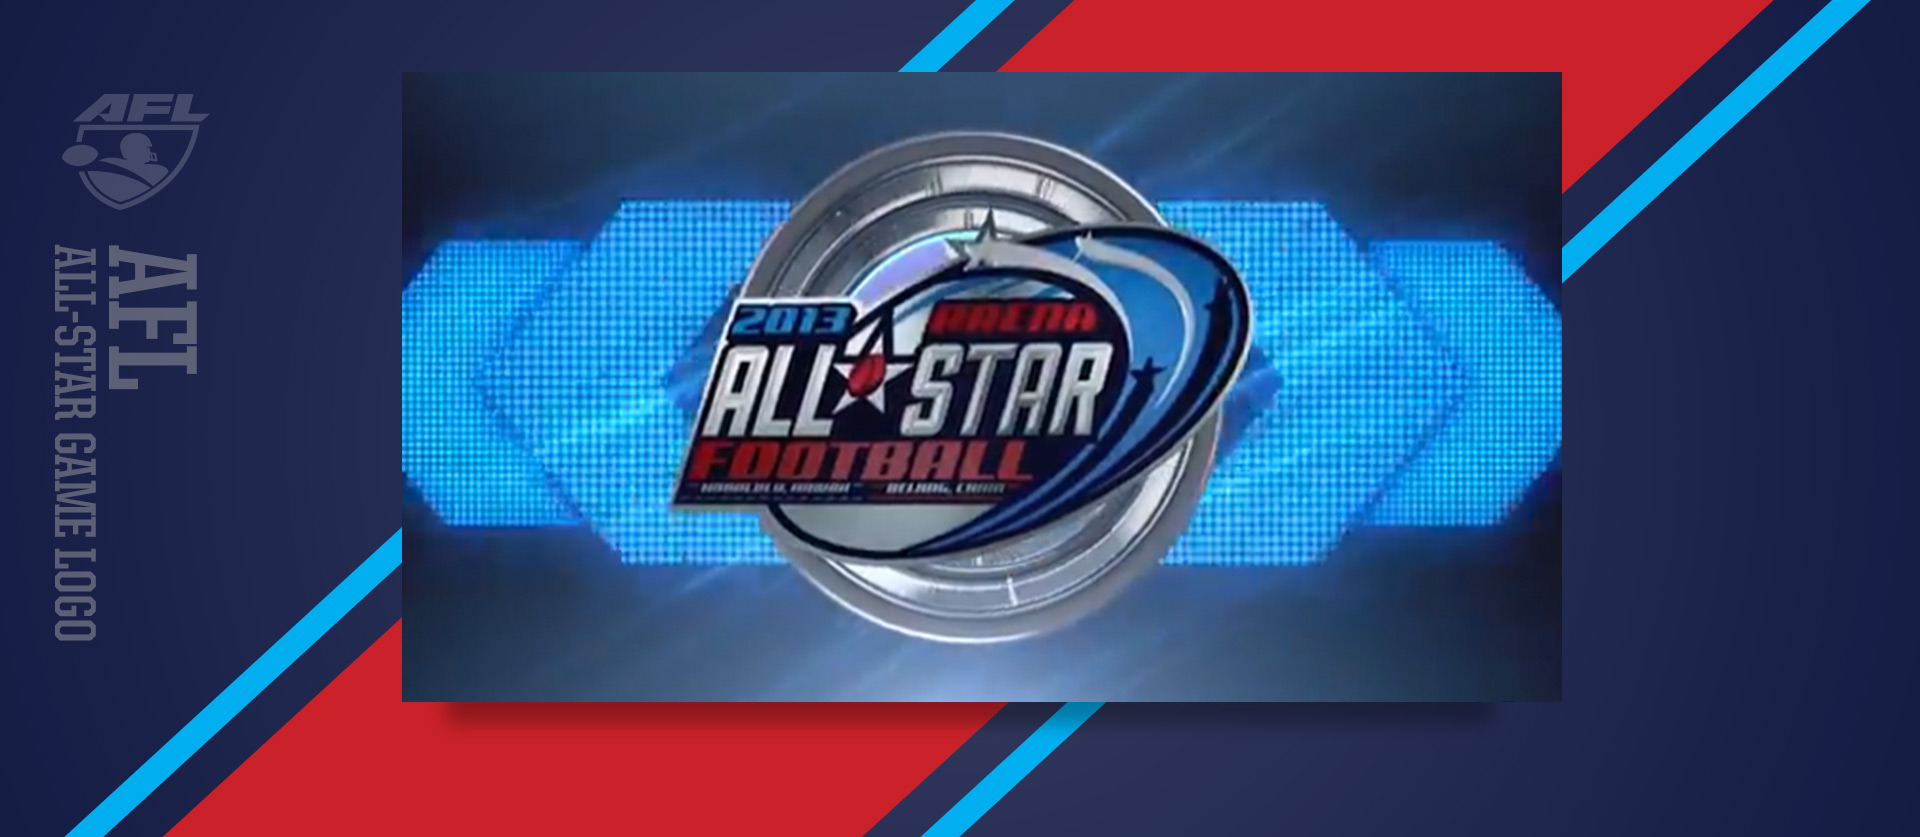 AFL All-Star Logo TV Shot 2